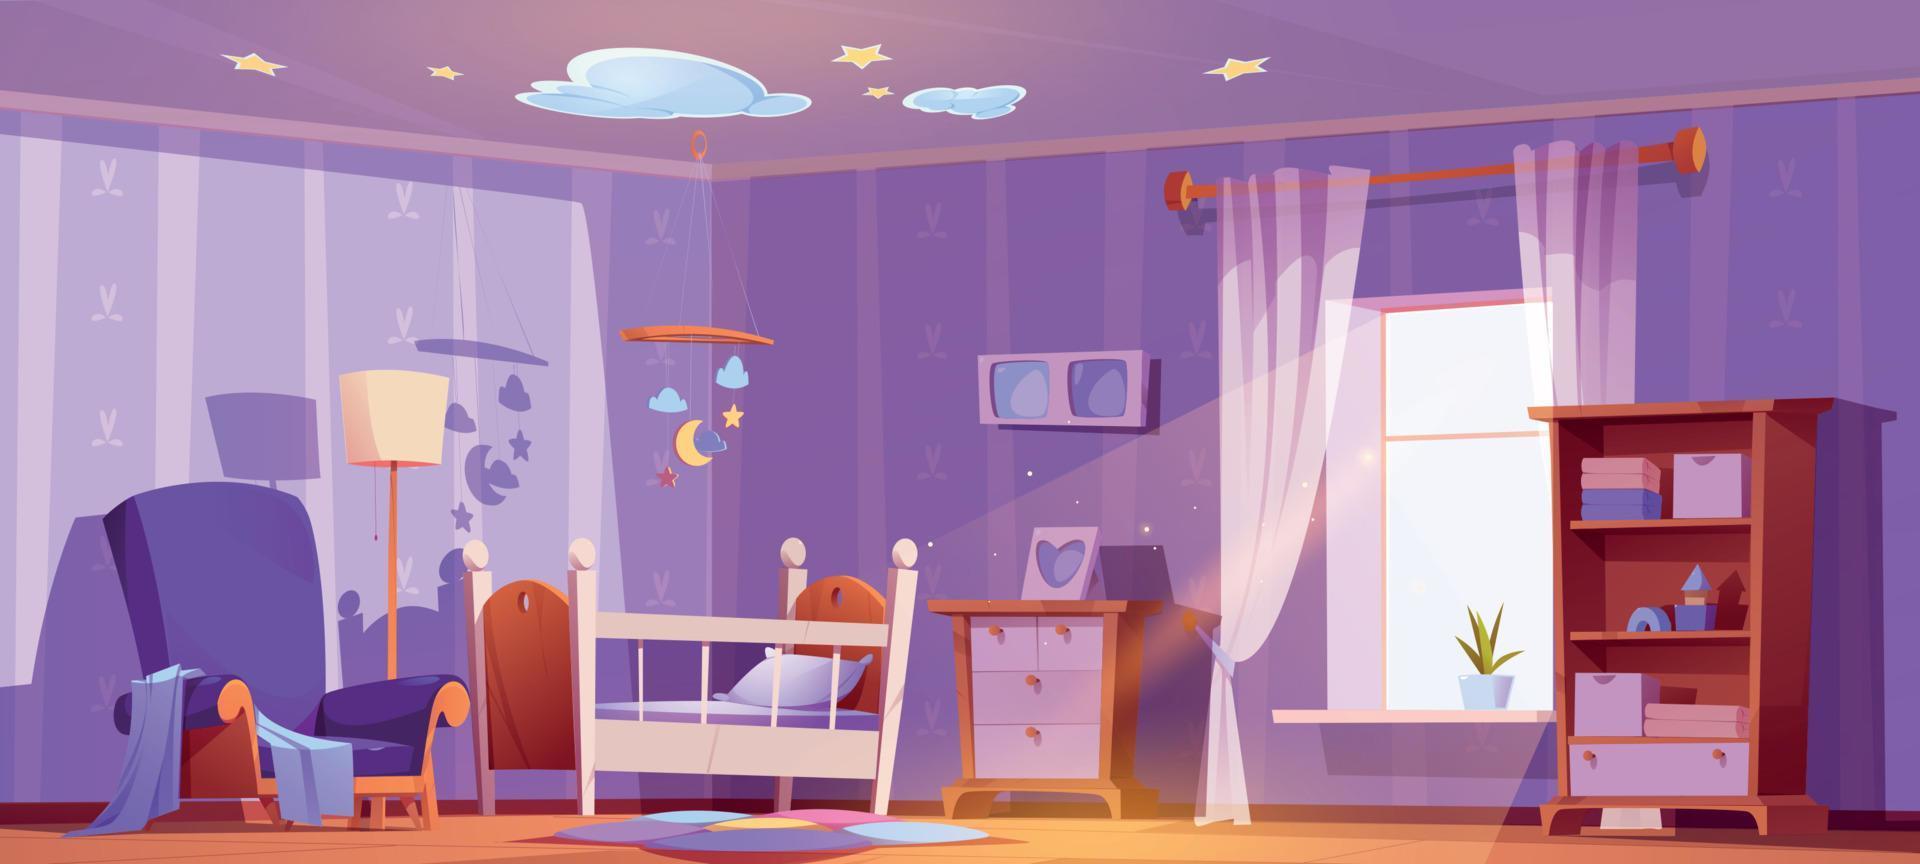 Kinderzimmer-Innenarchitektur mit Krippe, Spielzeug, Sessel vektor